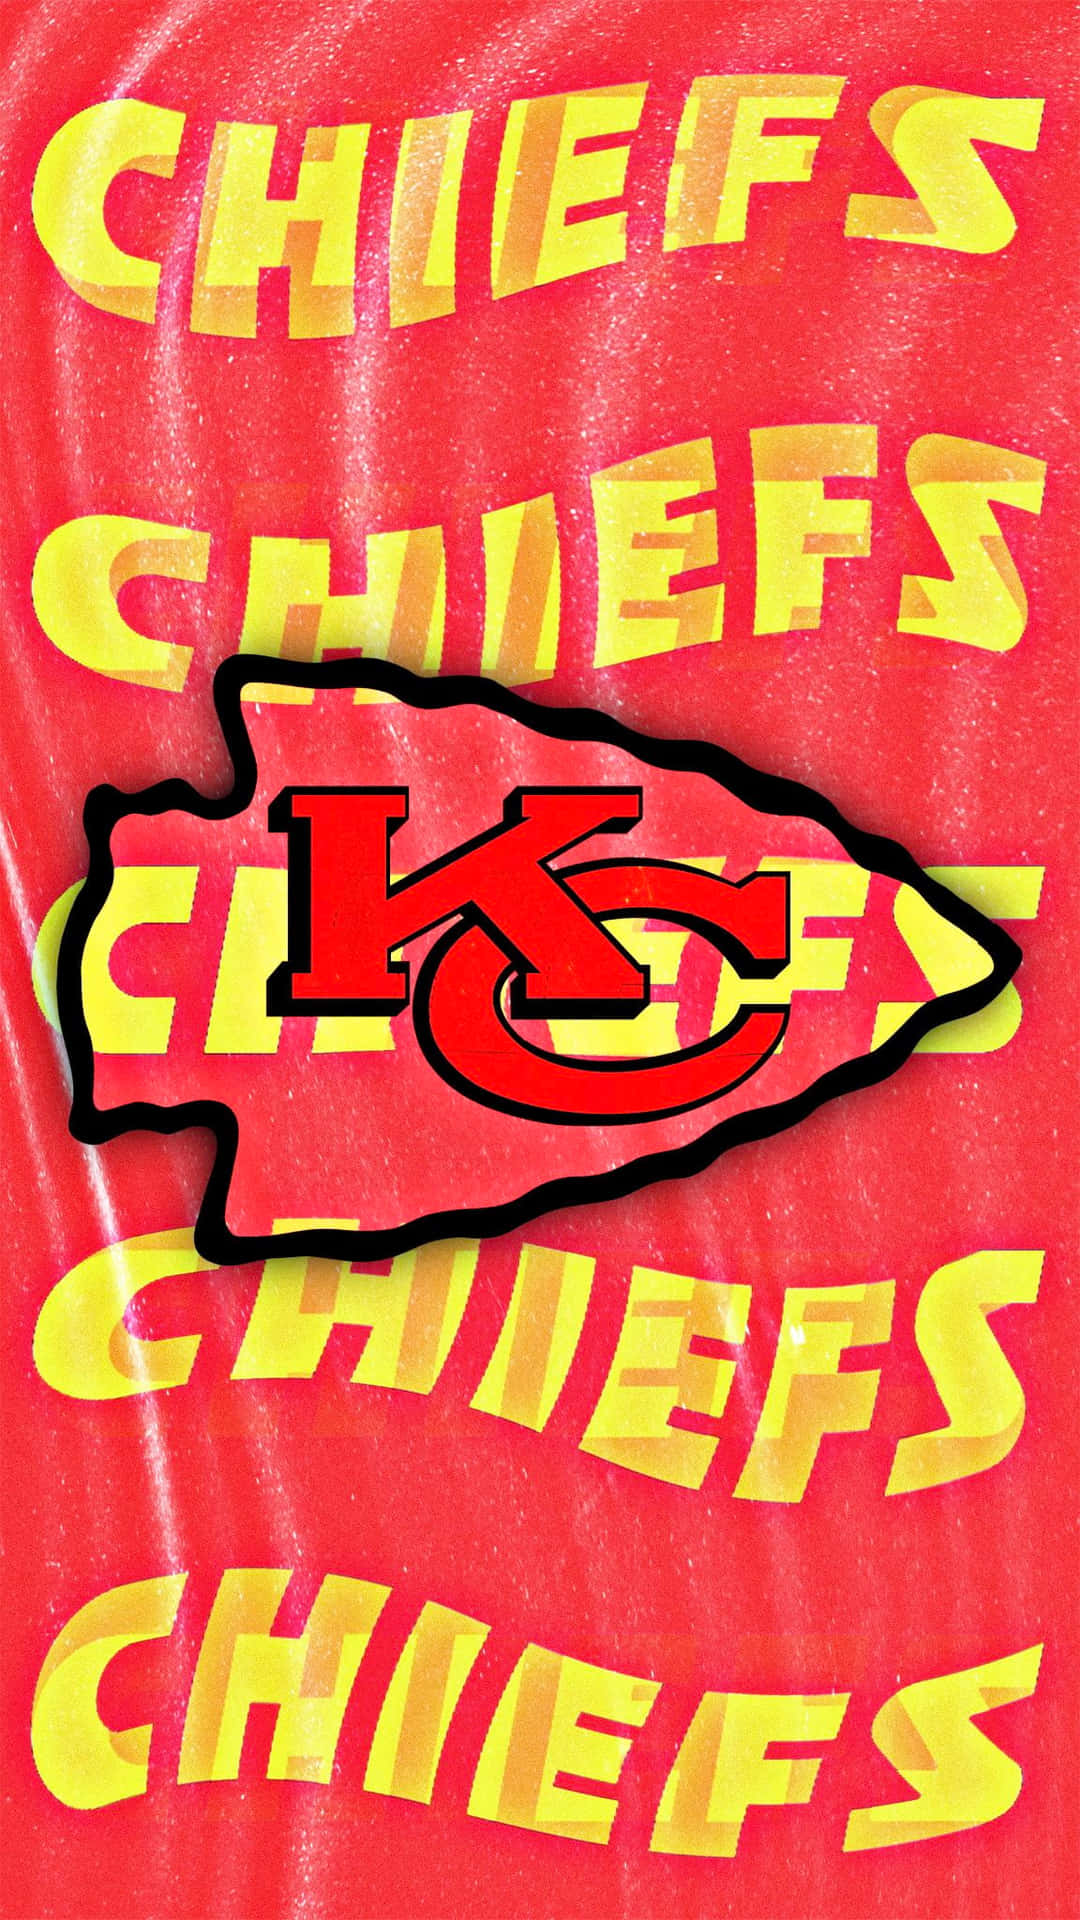 Muestratu Orgullo Por Los Kansas City Chiefs Con Este Elegante Fondo De Pantalla Para Iphone. Fondo de pantalla